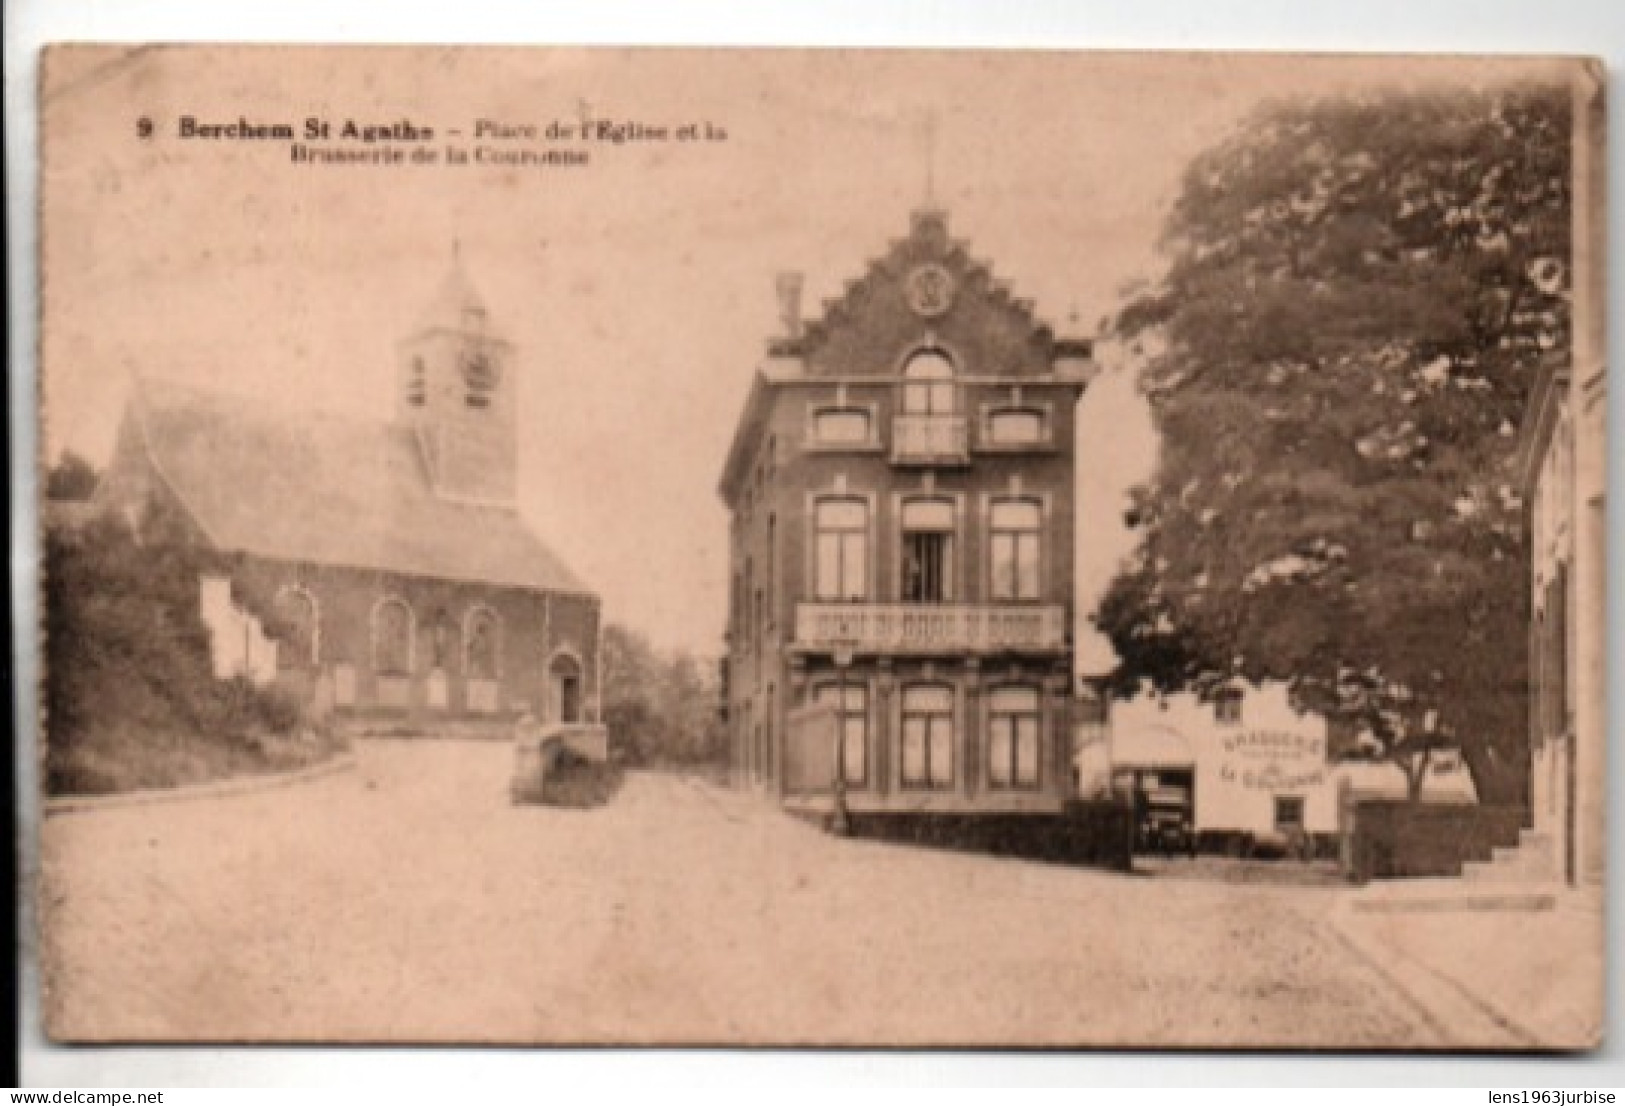 Berchem St Agathe - Place De L' Eglise Et La Brasserie De La Couronne - Cafés, Hotels, Restaurants